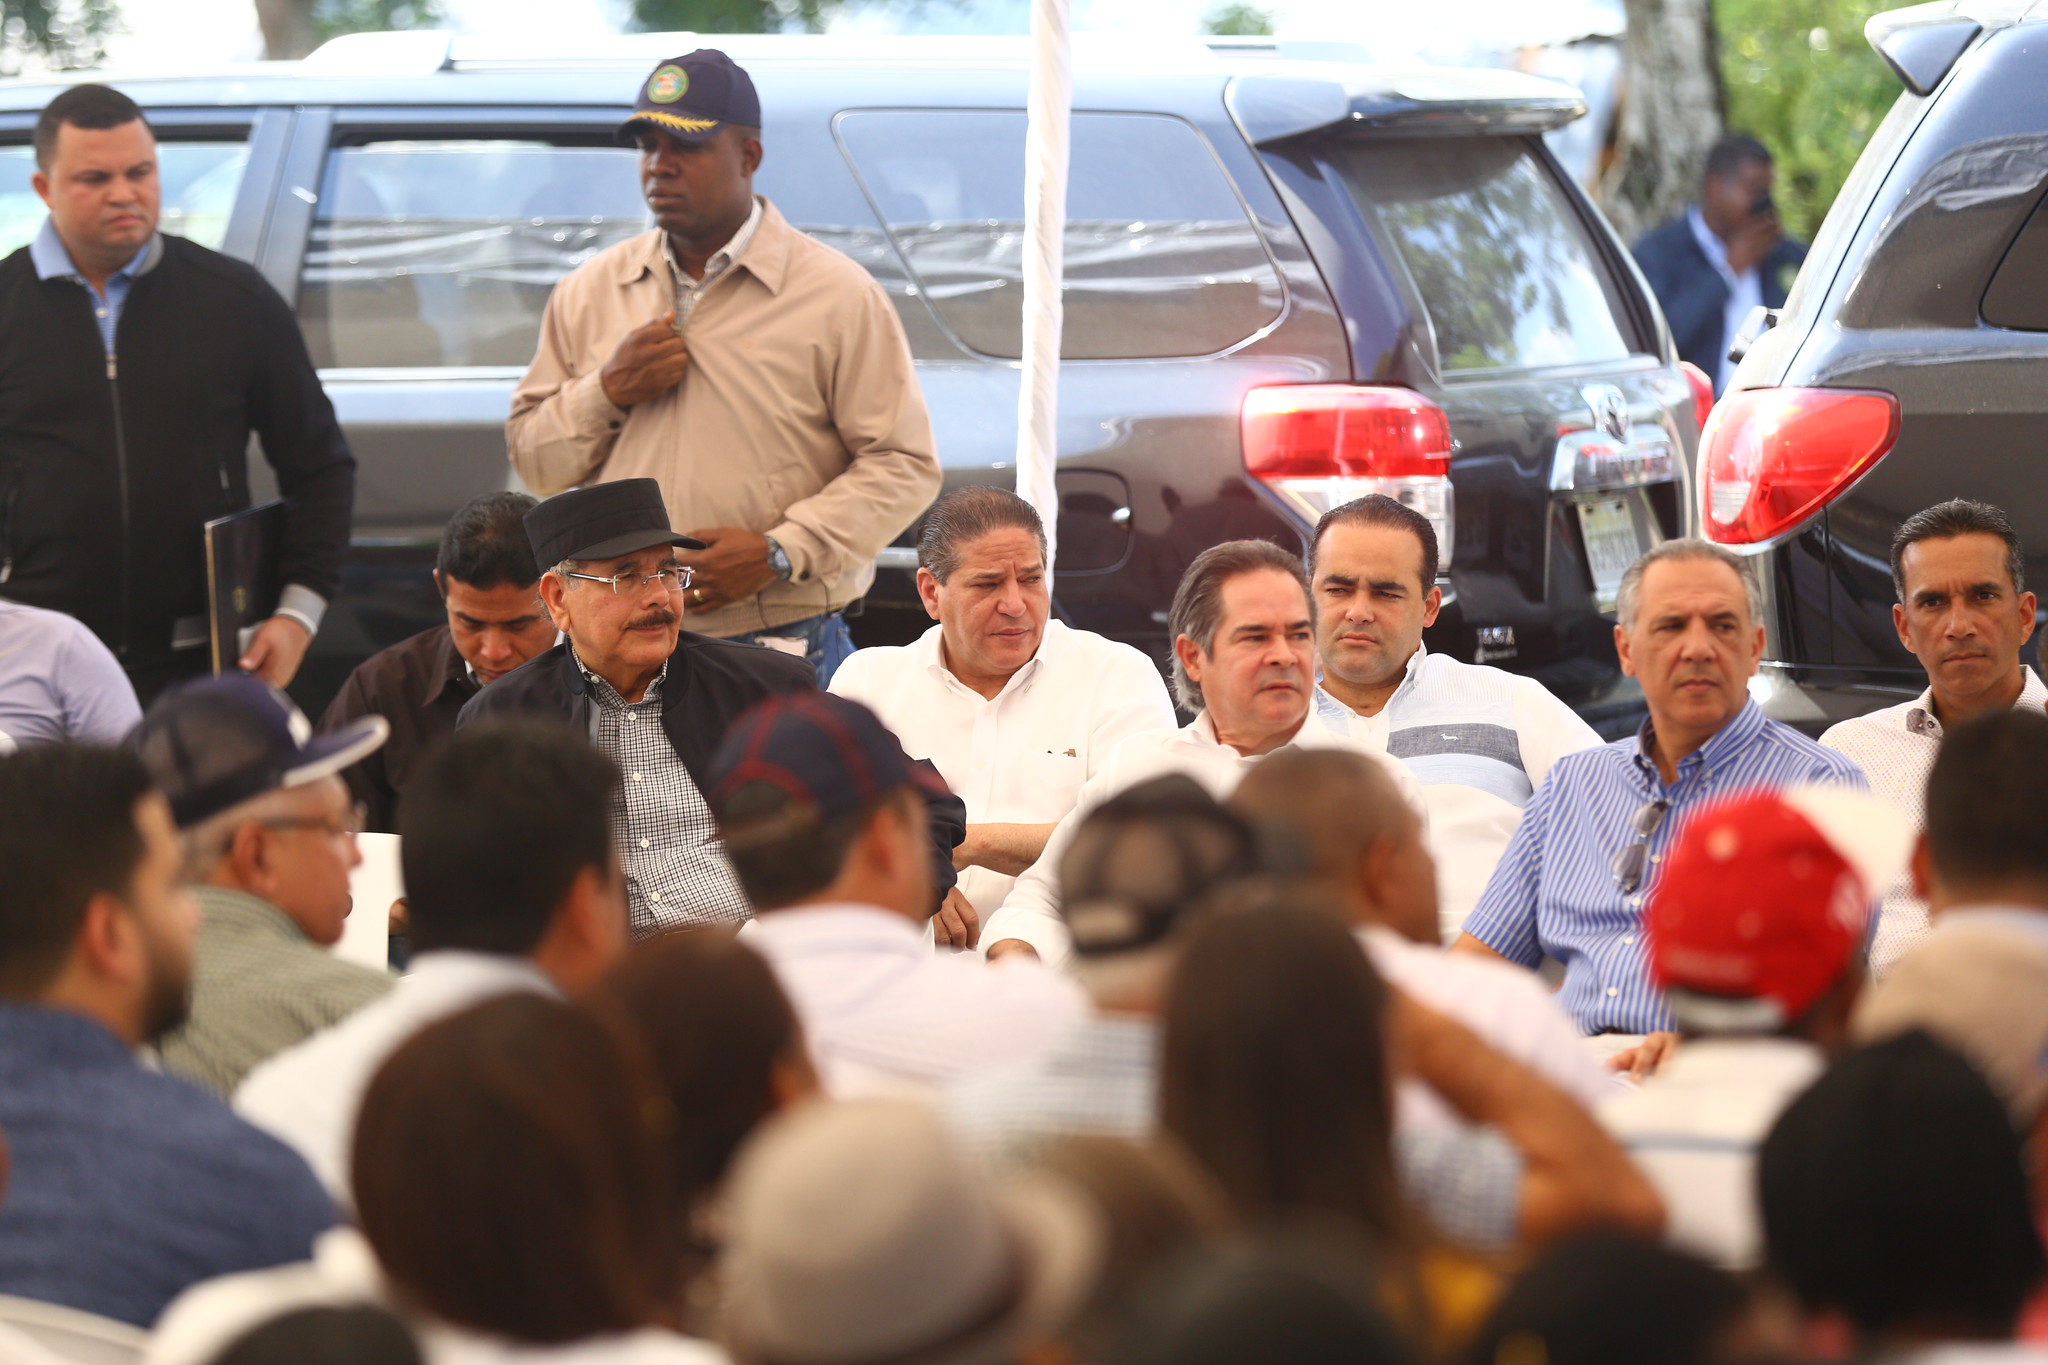 REPÚBLICA DOMINICANA: Danilo Medina celebra su cumpleaños brindando apoyo a pequeños ganaderos de Santiago Rodríguez. Dispone crédito solidario y donaciones